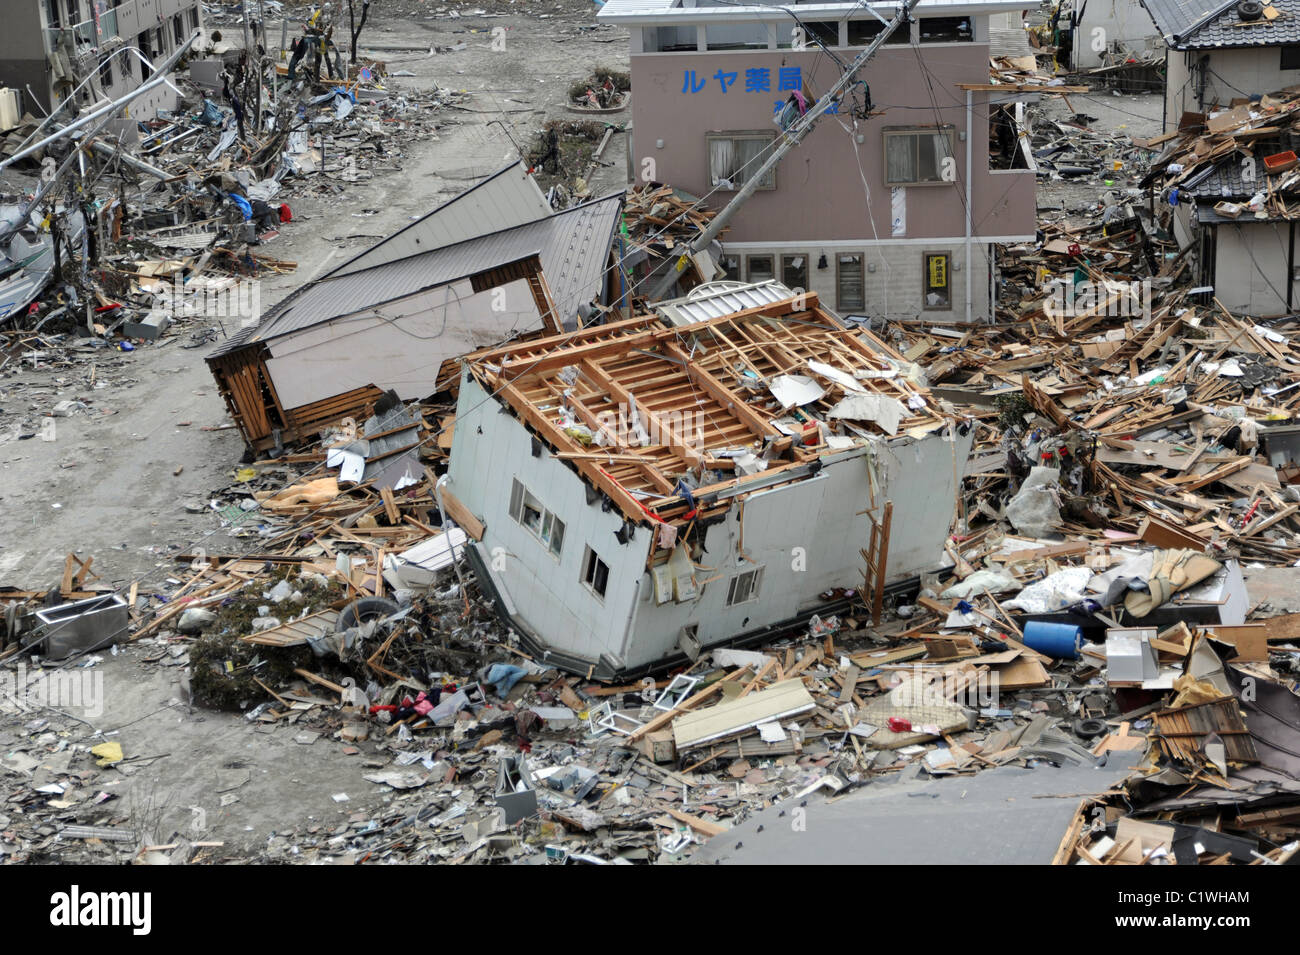 La casa si trova a testa in giù sul suo tetto tra detriti di Ofunato, Giappone, dopo il marzo 2011 terremoto + tsunami. Foto Stock